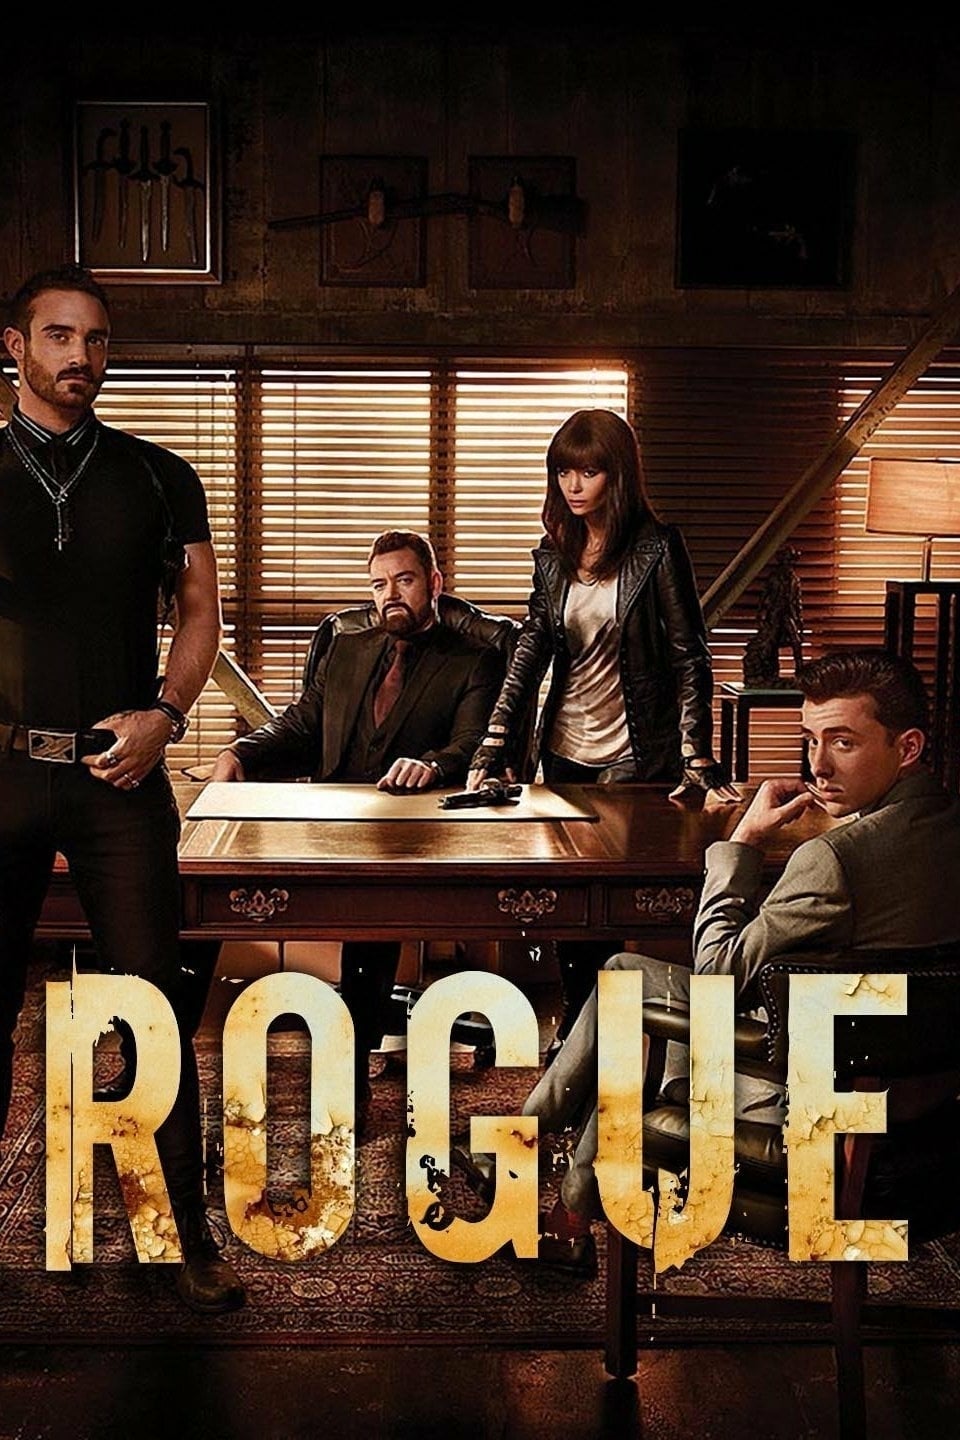 Rogue (2013)